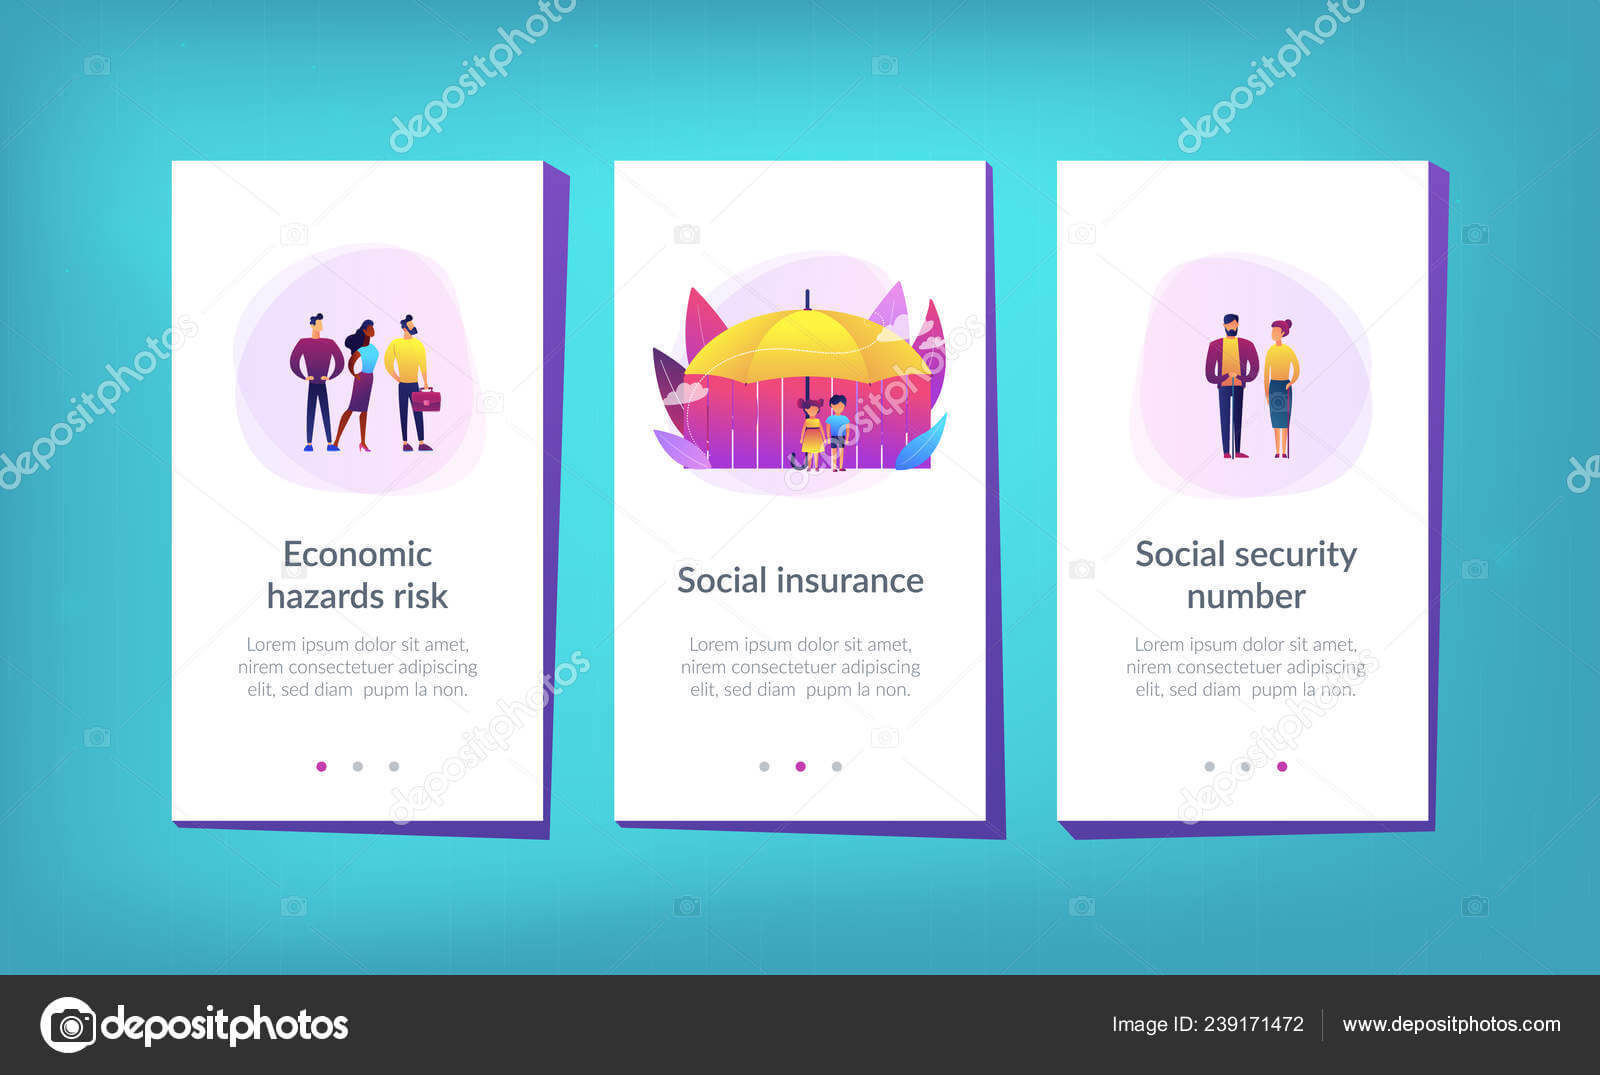 Blank Social Security Card Template | Social Insurance App Within Blank Social Security Card Template